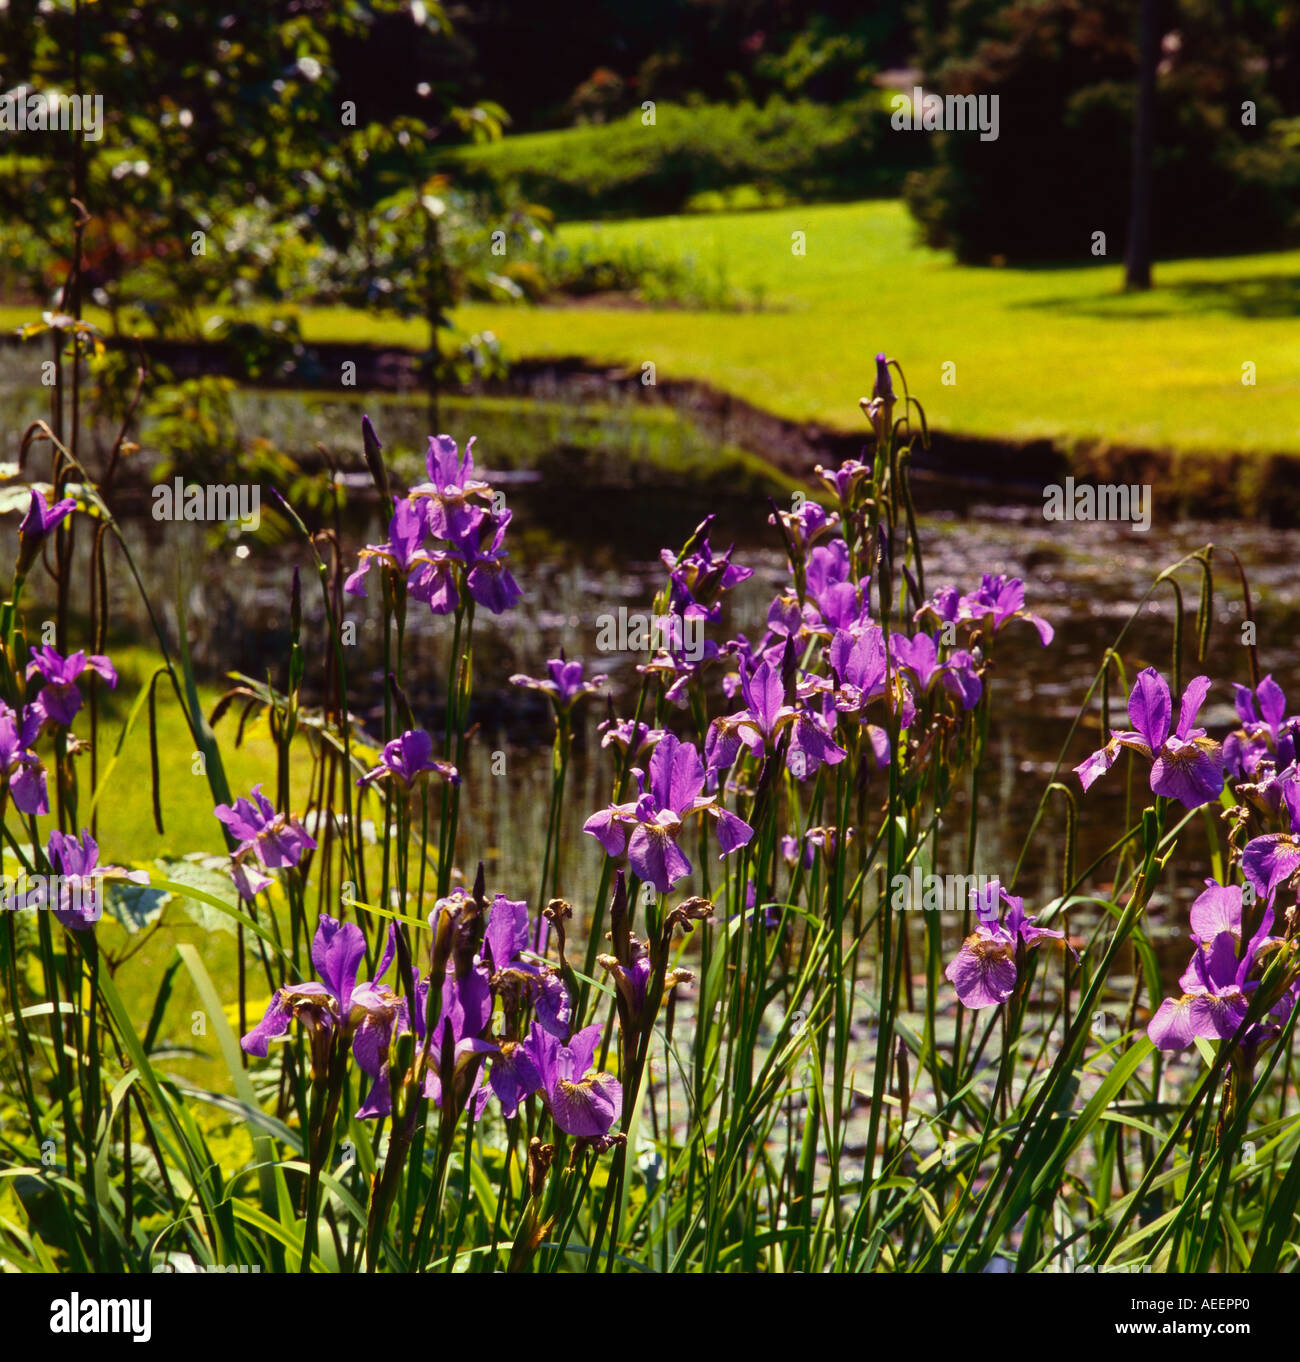 Iris fleurs violet en face d'un étang dans un jardin sur une journée ensoleillée Banque D'Images